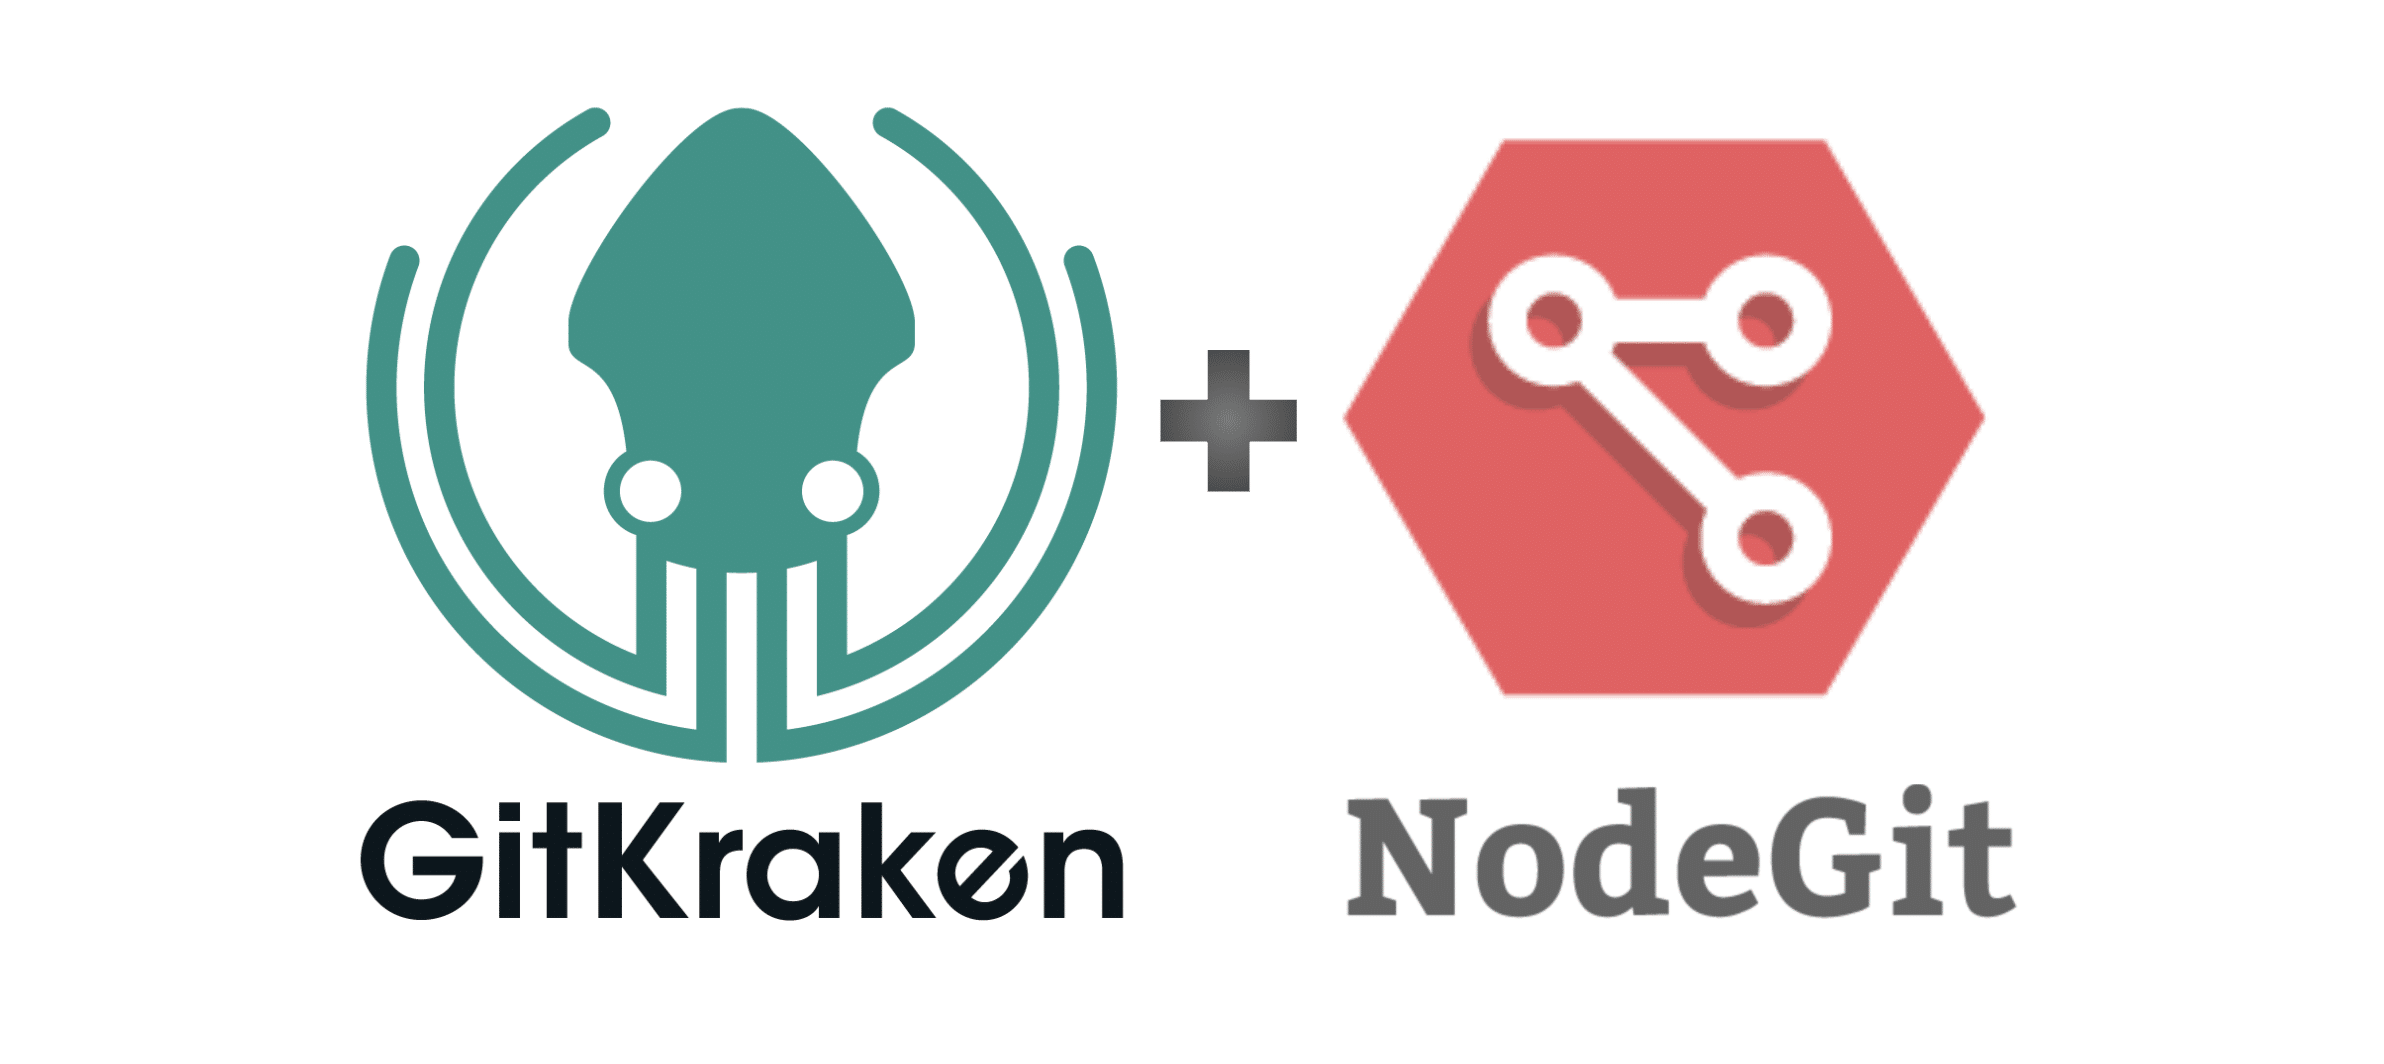 GitKraken and NodeGit logos